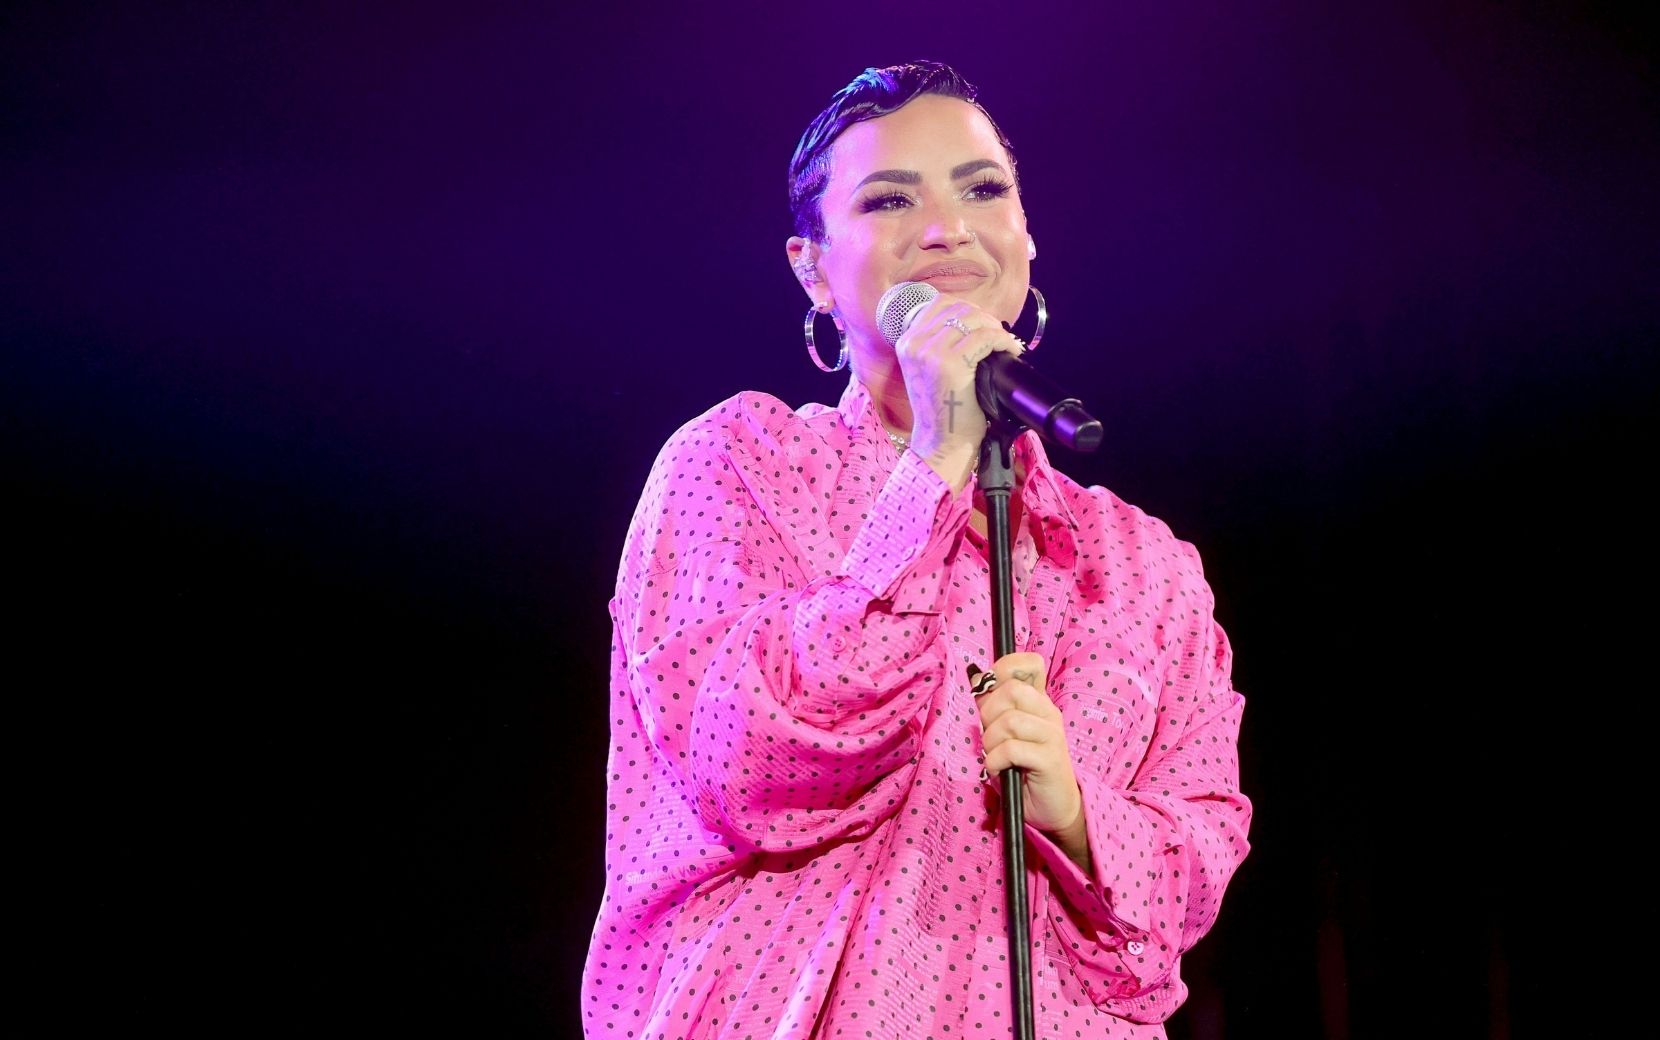 Em véspera da estreia do documentário, Demi Lovato dá show em drive-in com músicas inéditas